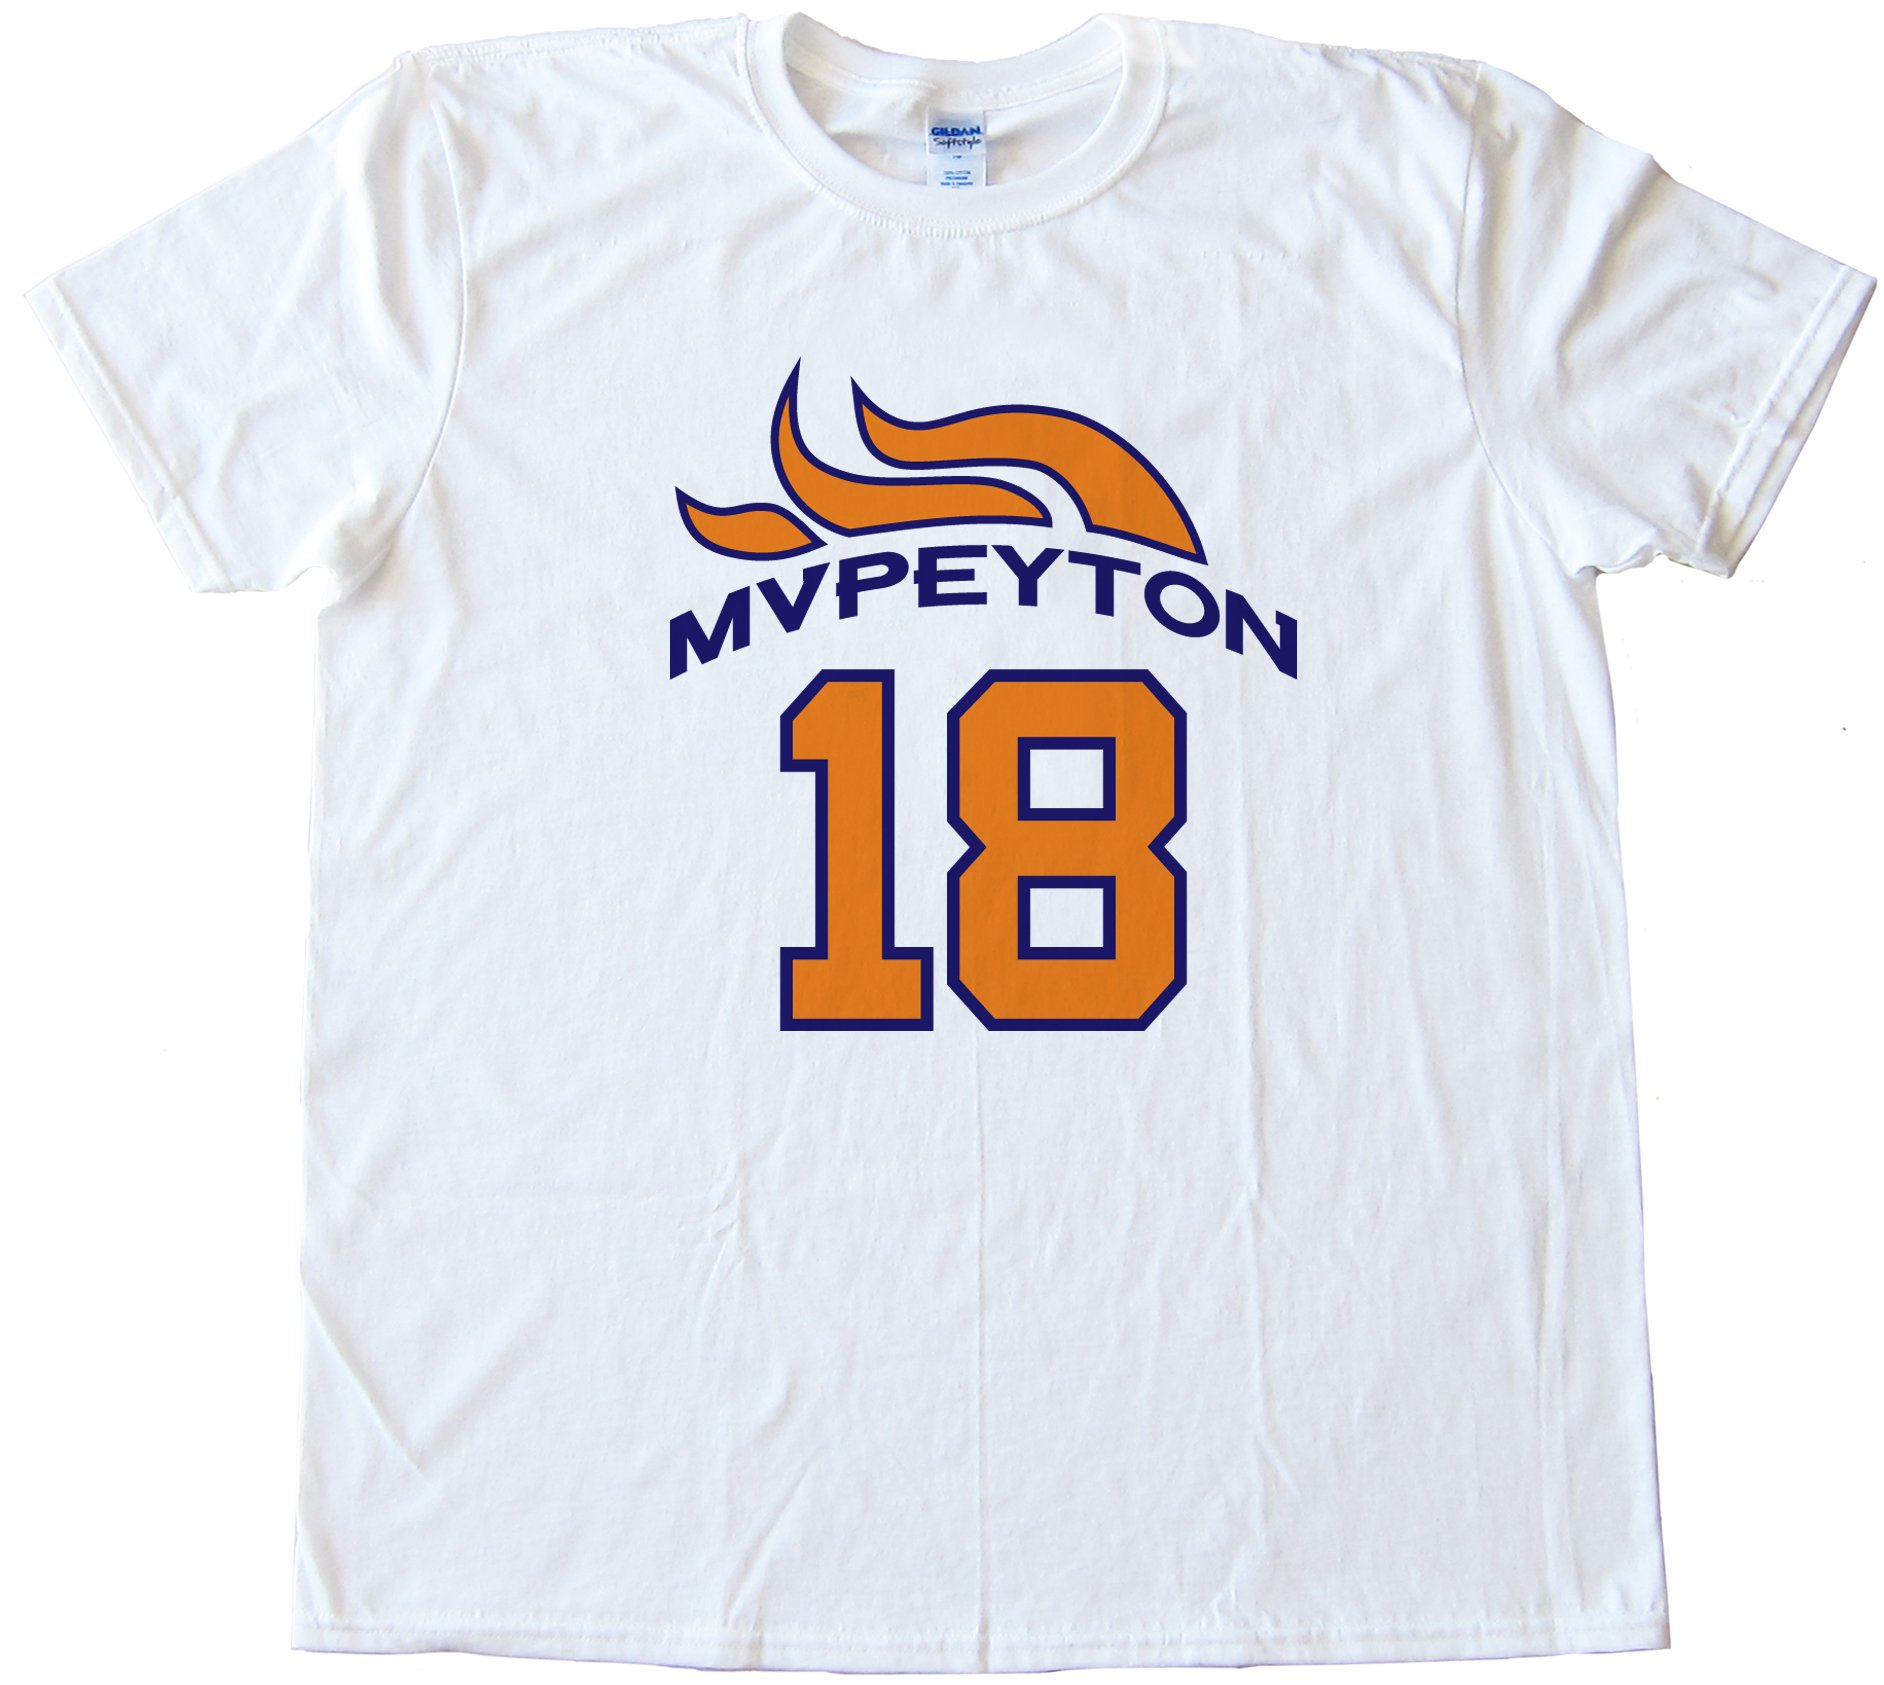 Mvpeyton Peyton Manning Denver Broncos Tee Shirt